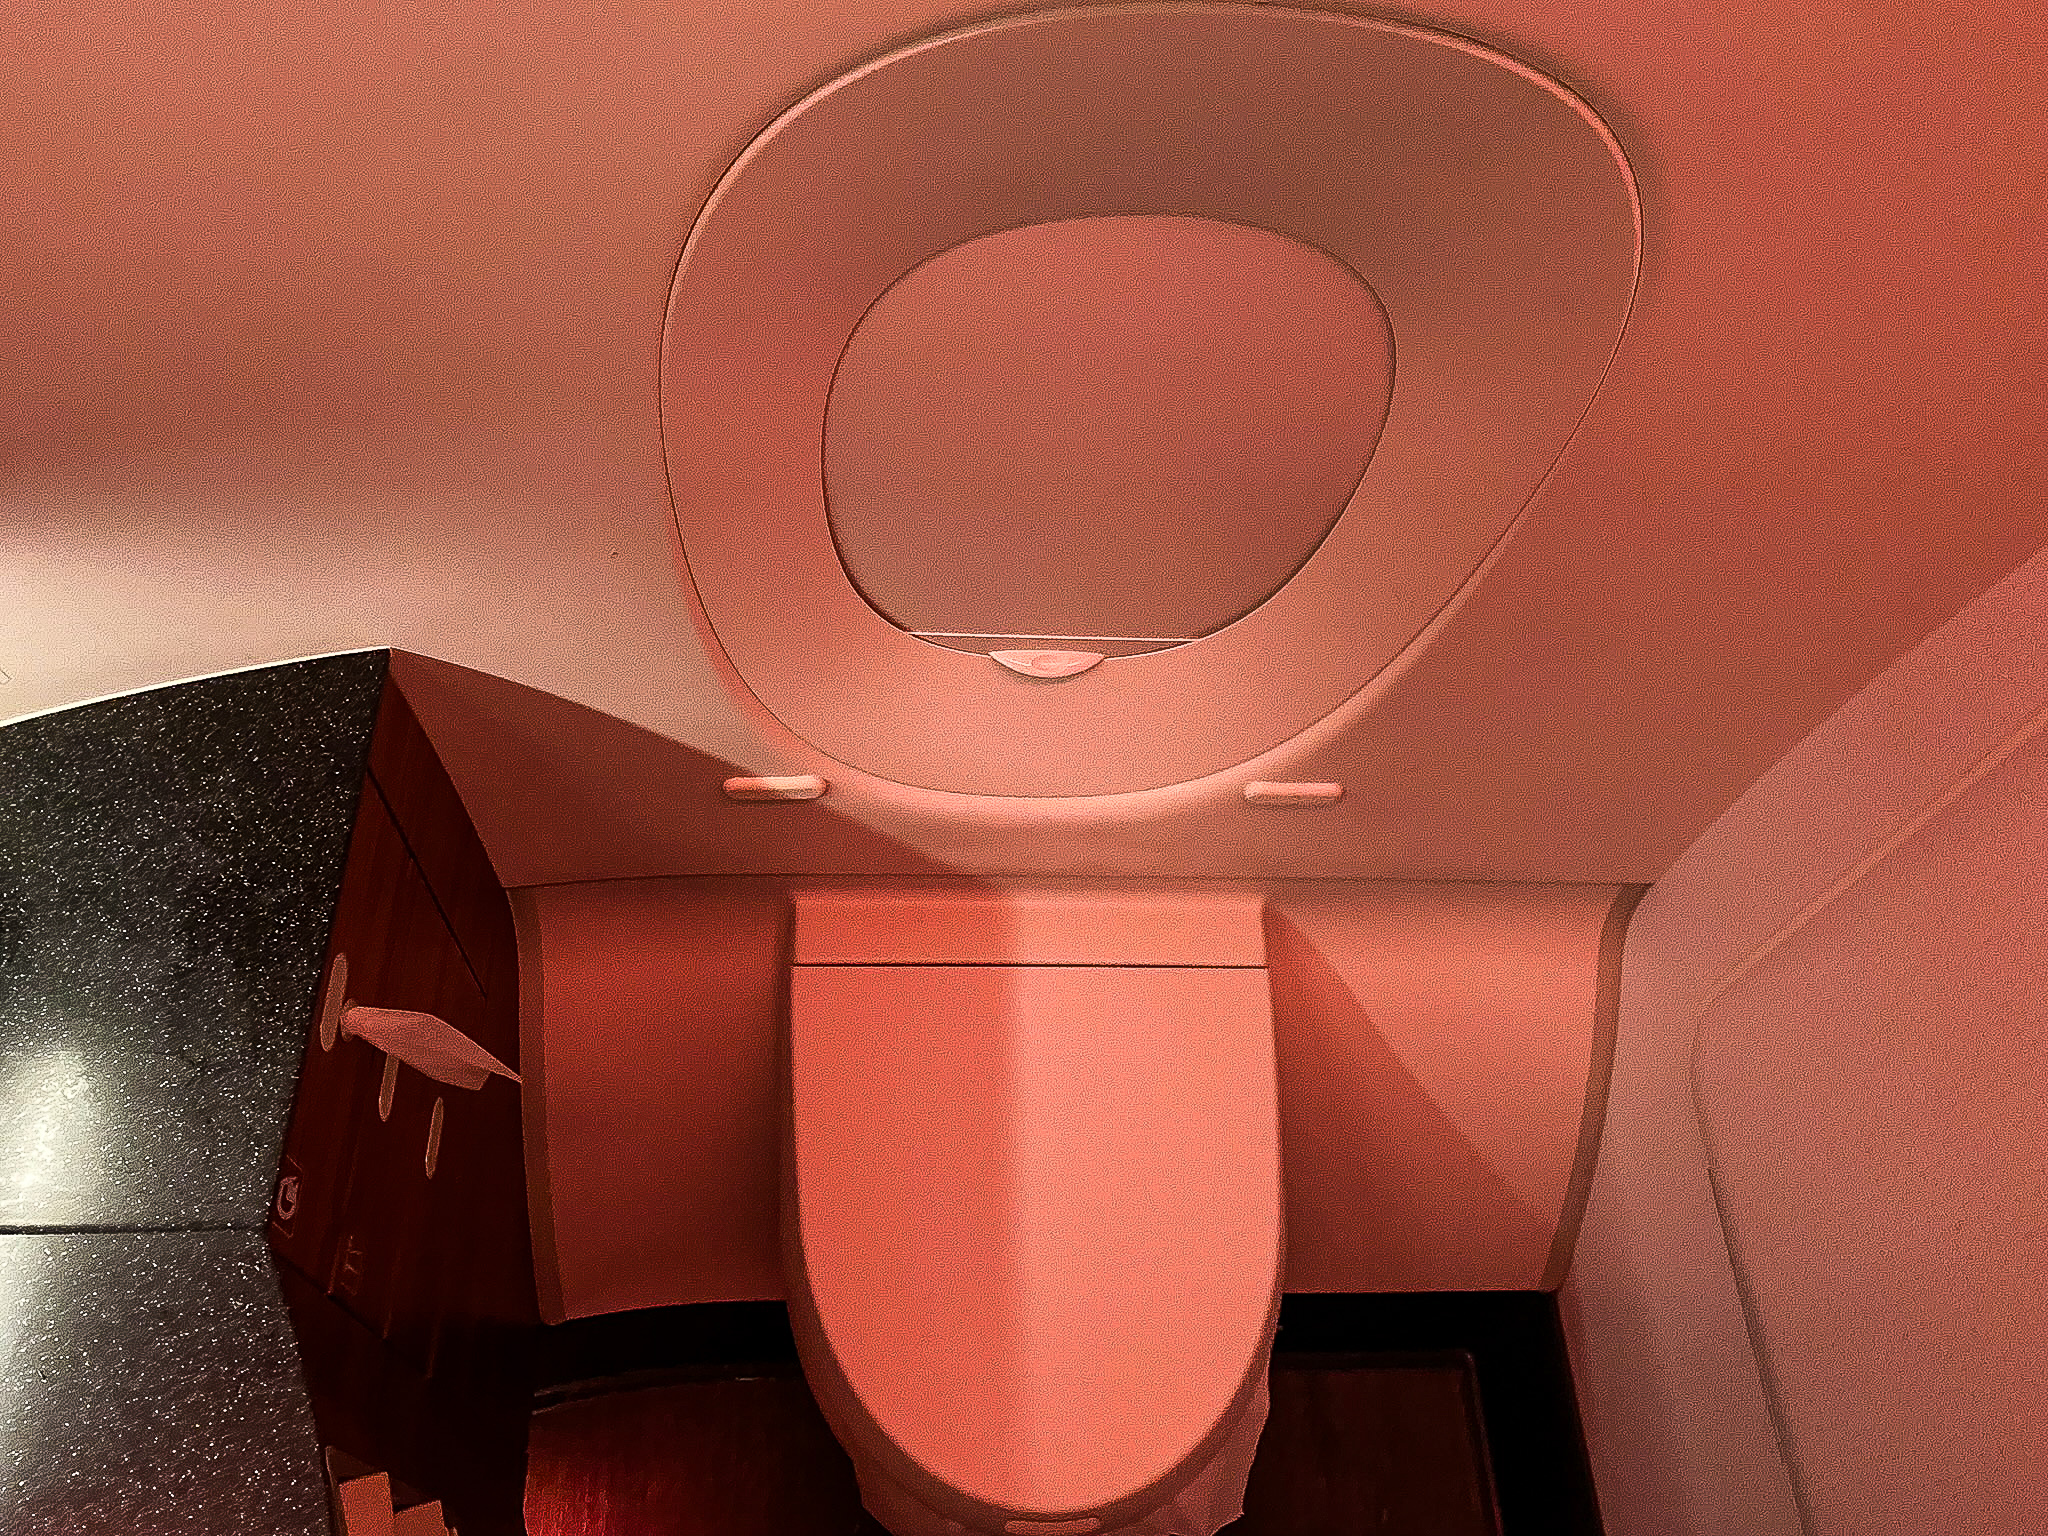 Qatar Airways Qsuites lavatory